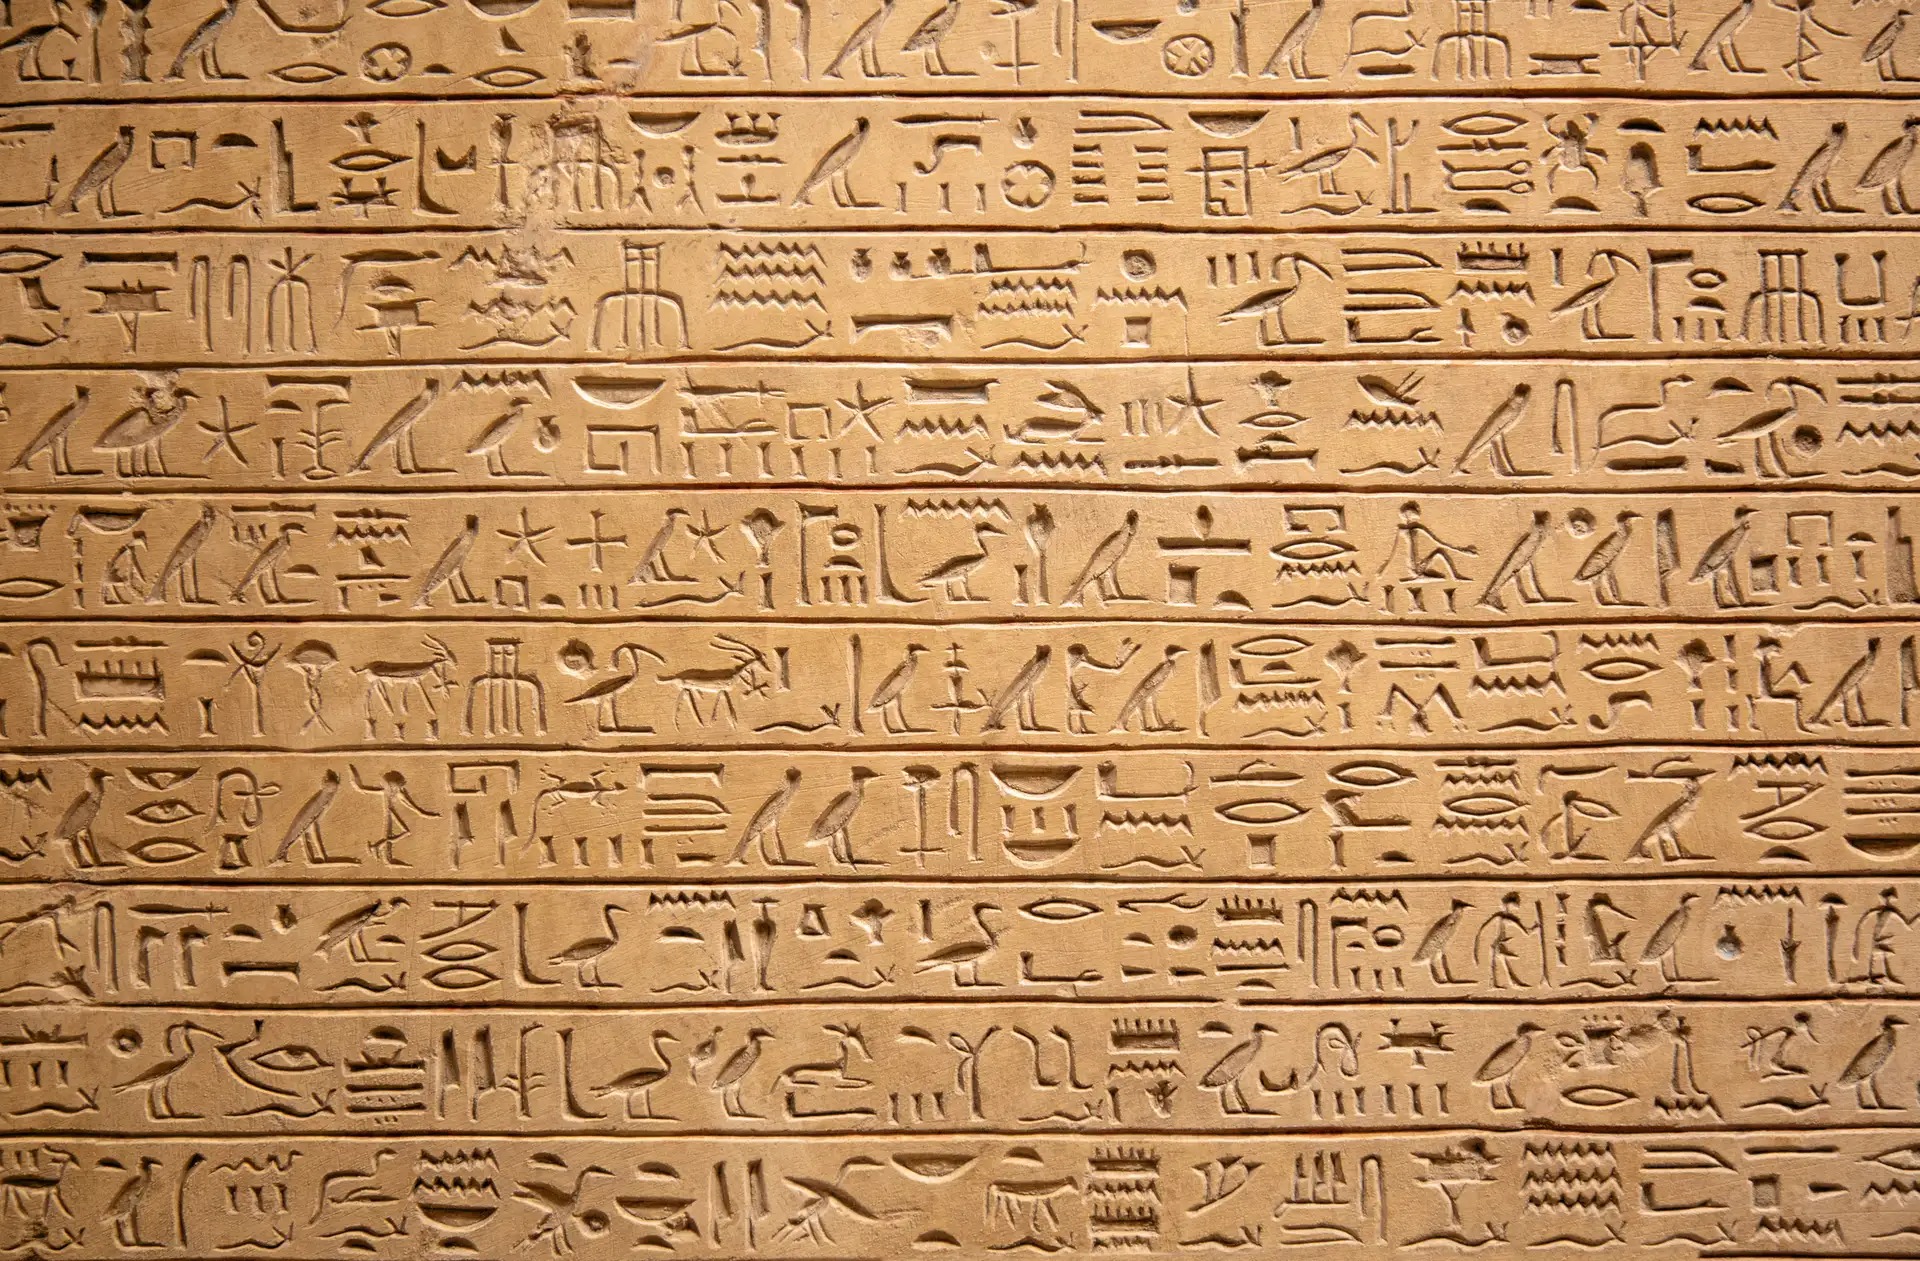 hieroglyphes - Altes Ägypten - Der seltsame Fall der abgetrennten Hände